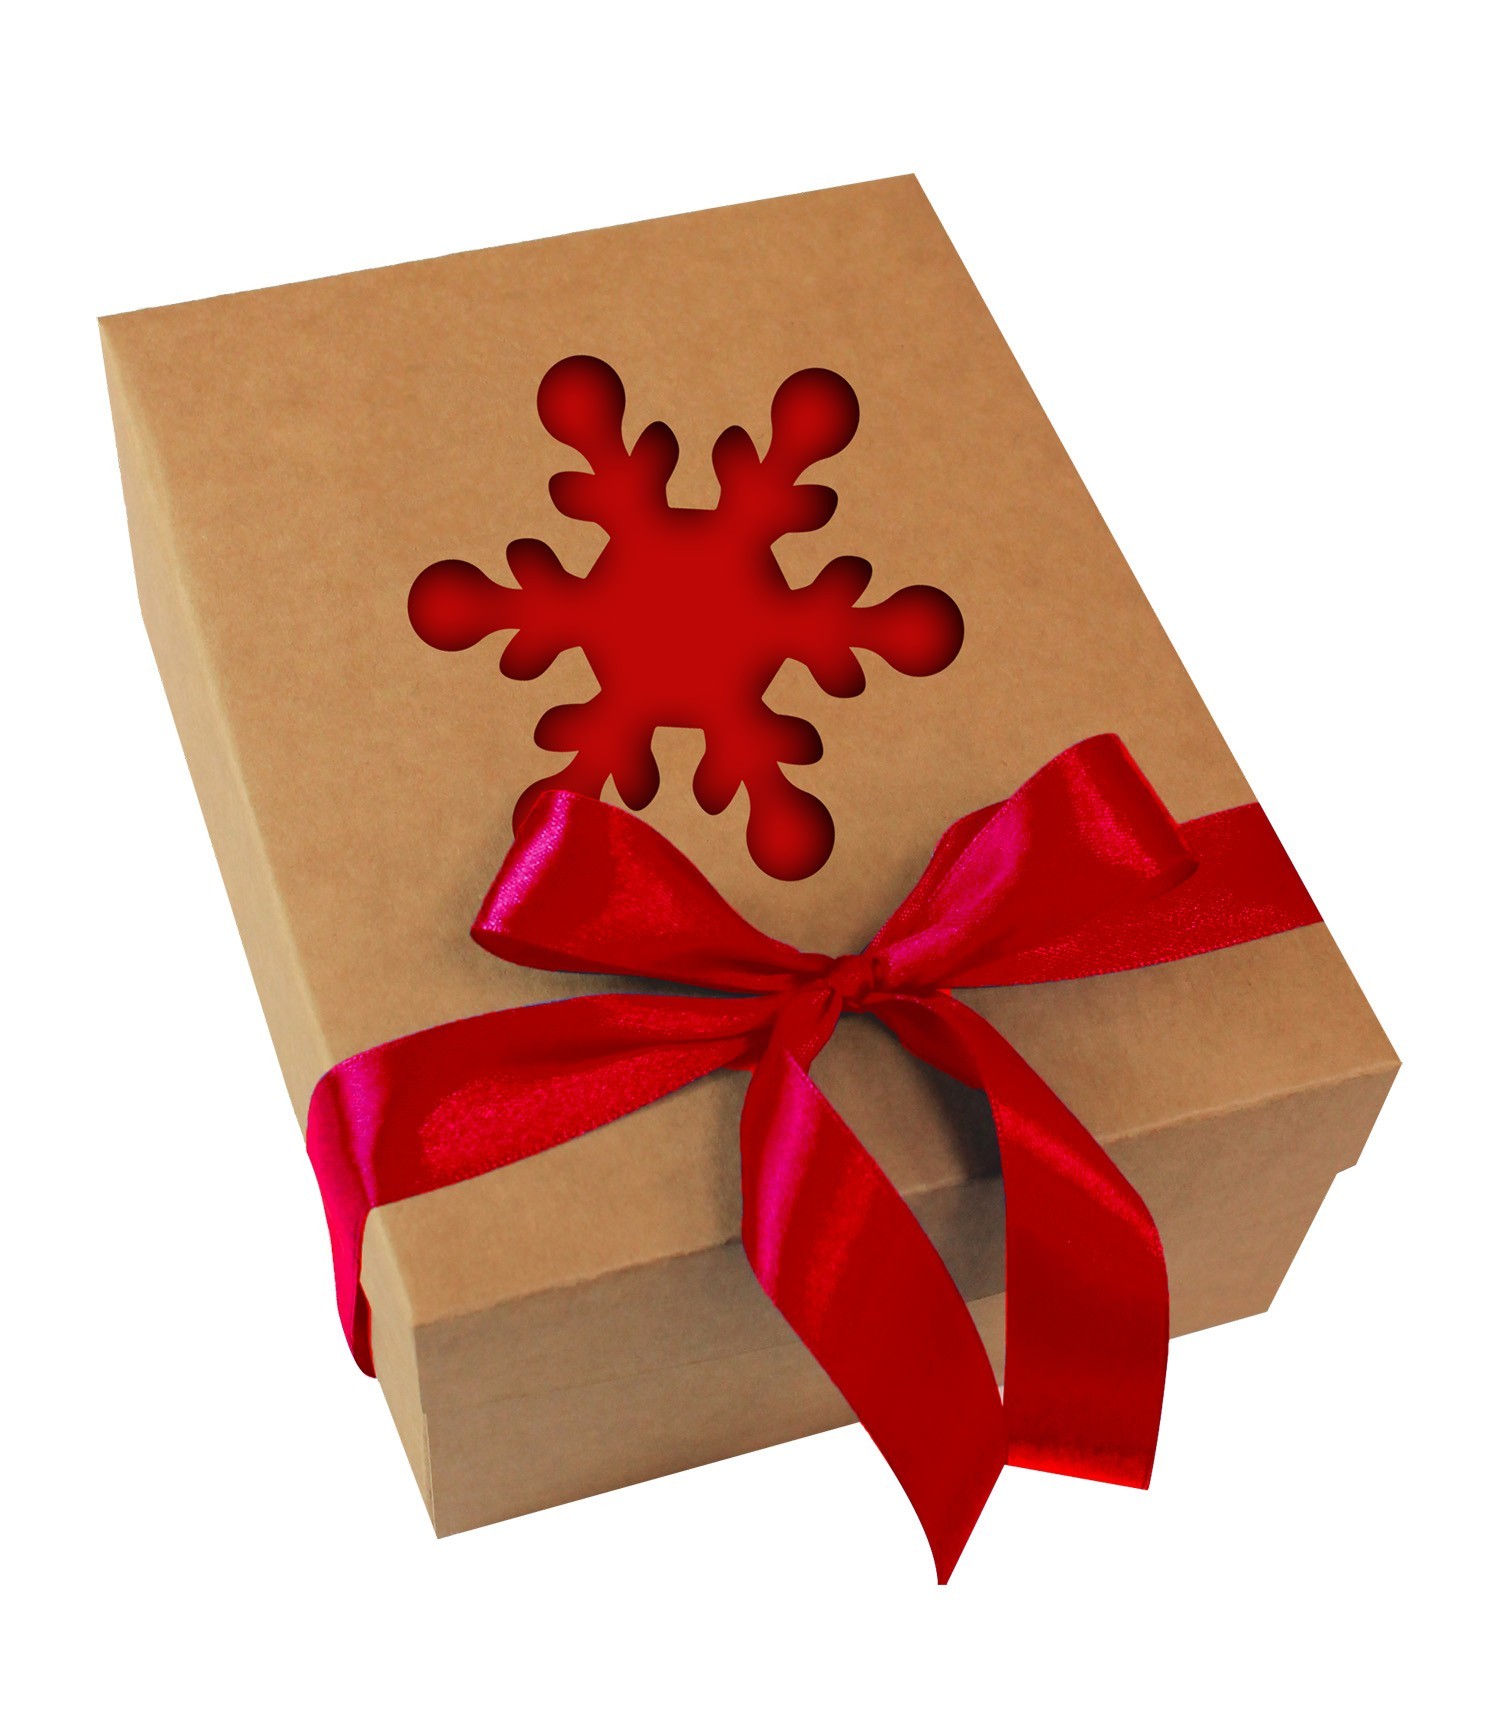 Статья: Из каких материалов делают подарочные коробки?